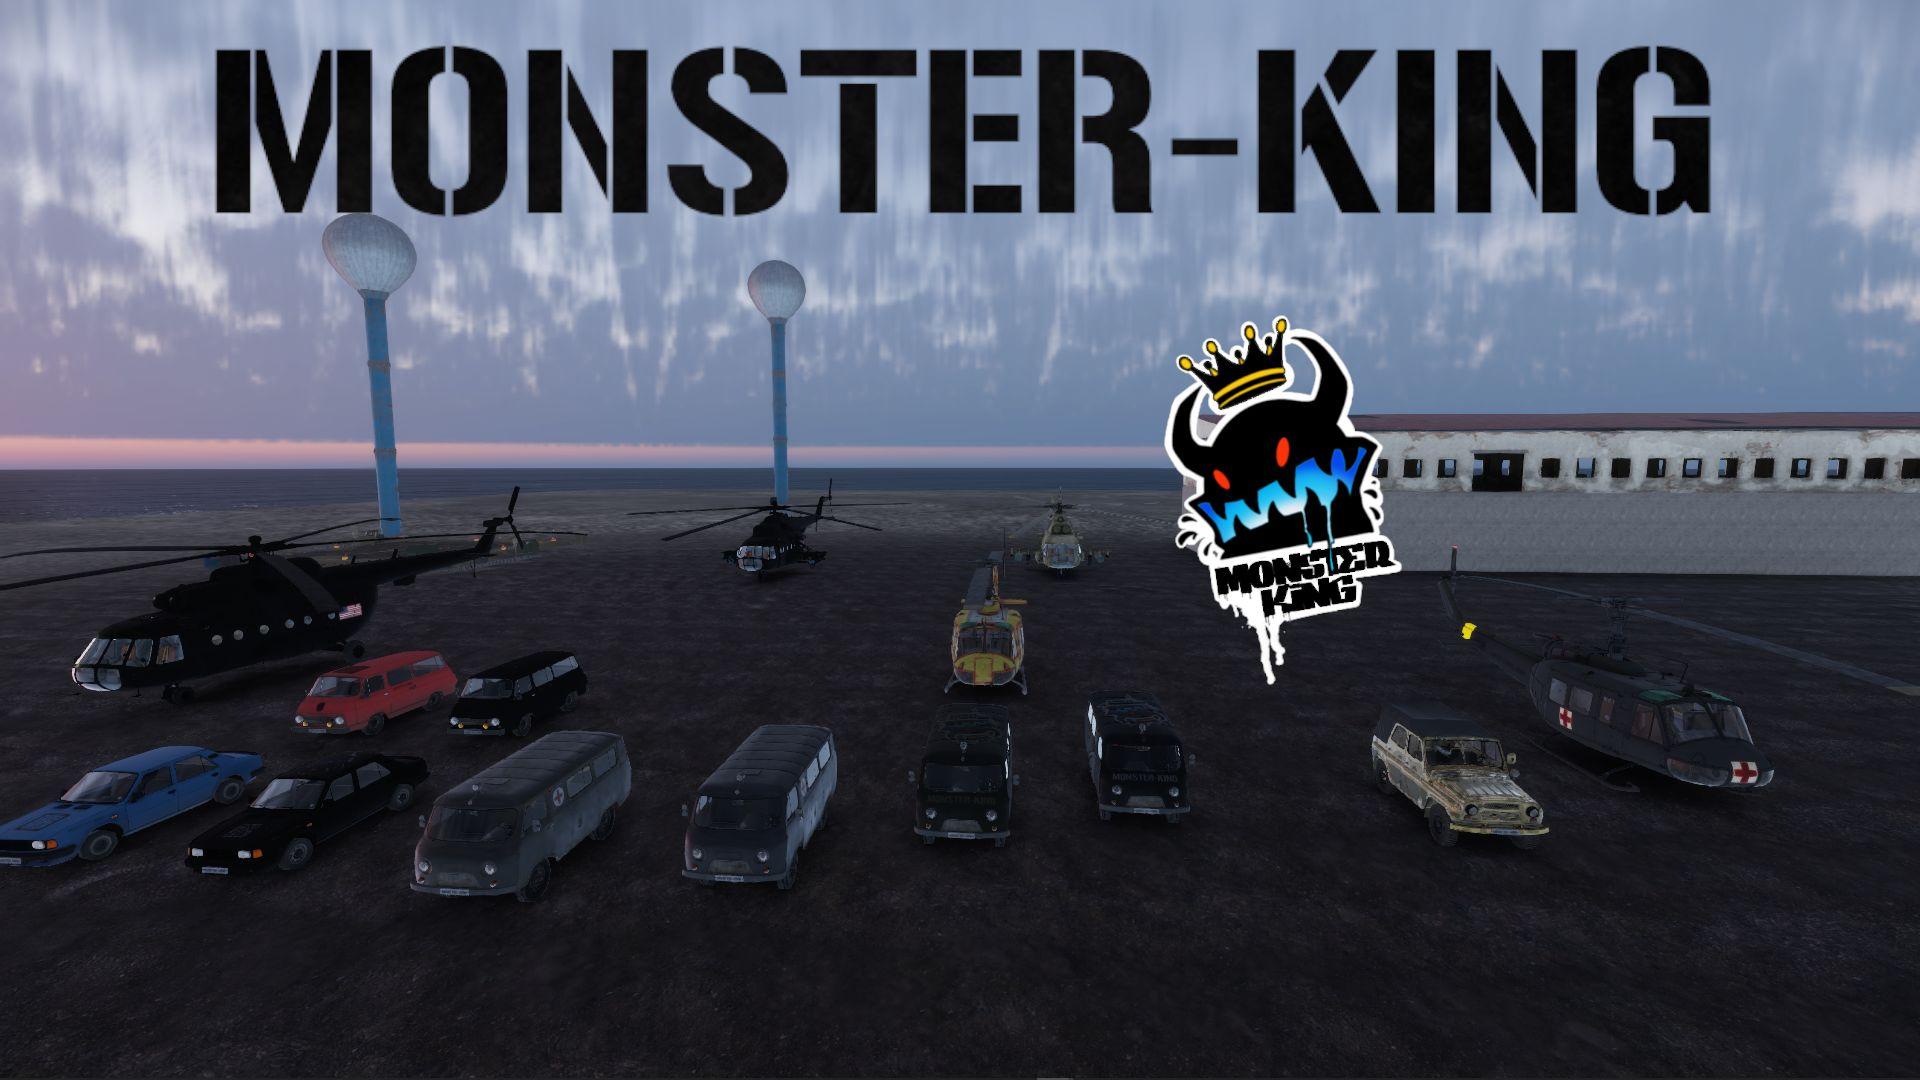 Monster-King Vehicles